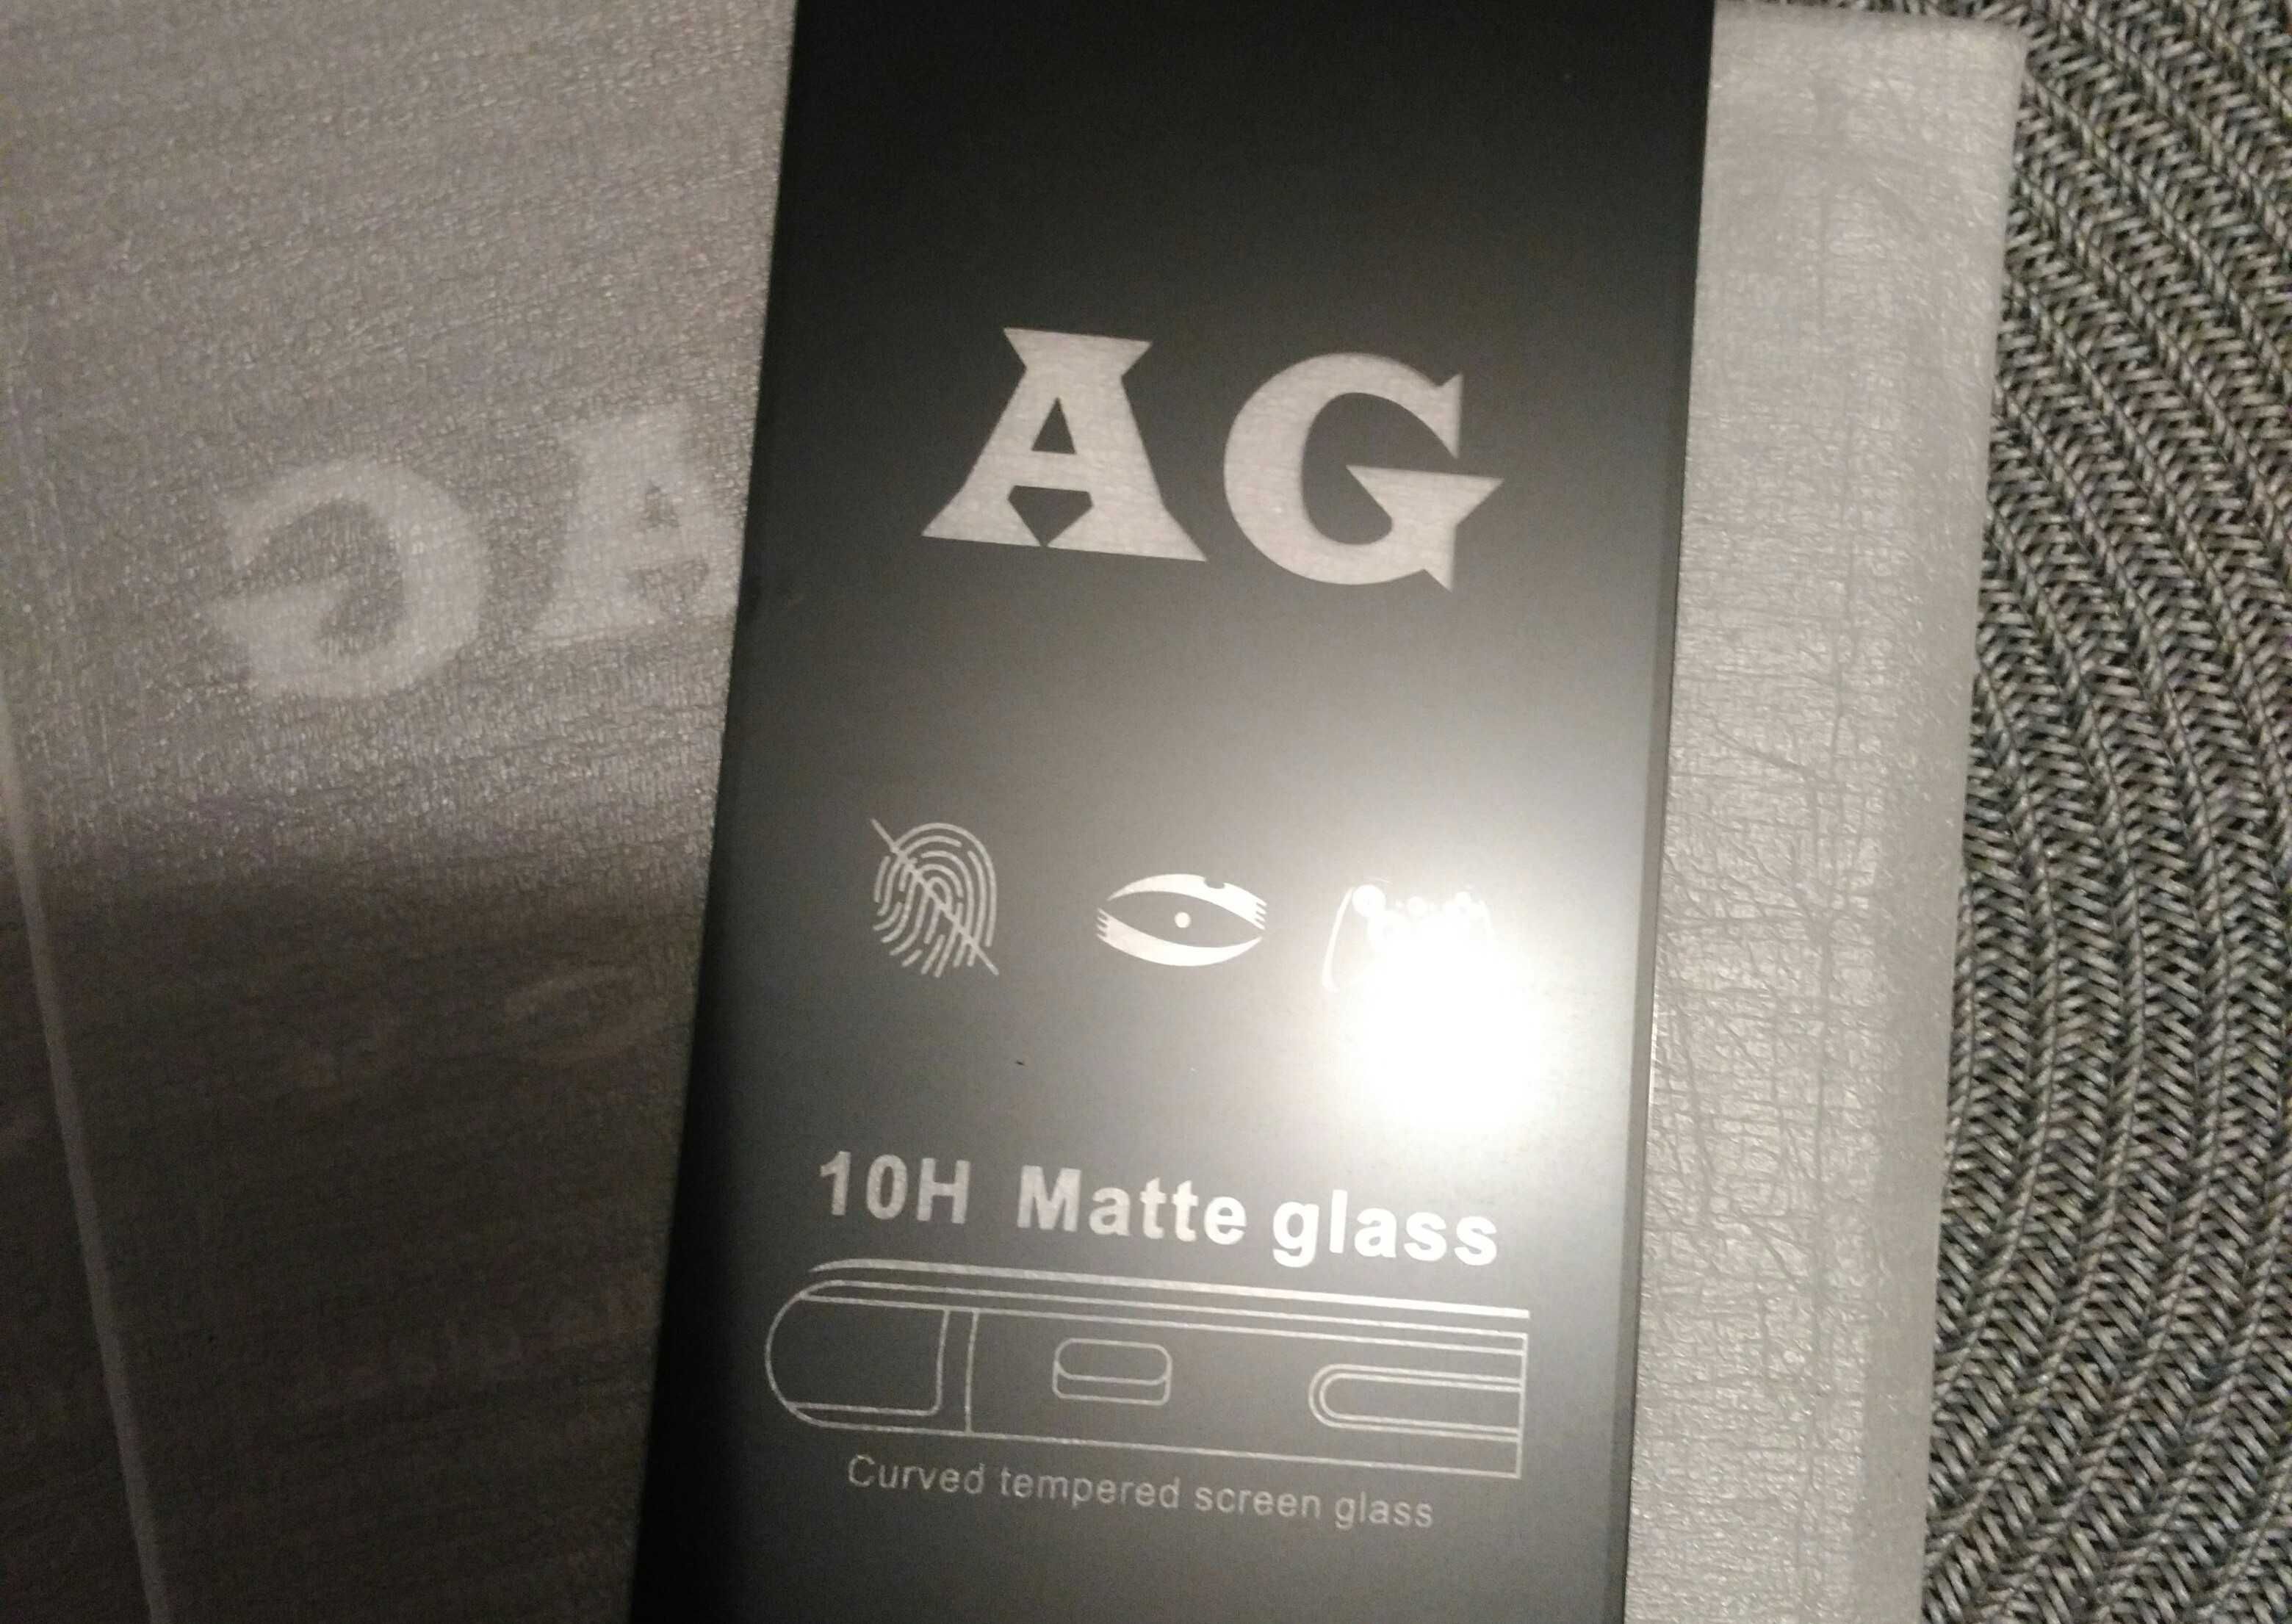 Продам защитное матовое стекло AG 10H Matte glass 3шт одним лотом